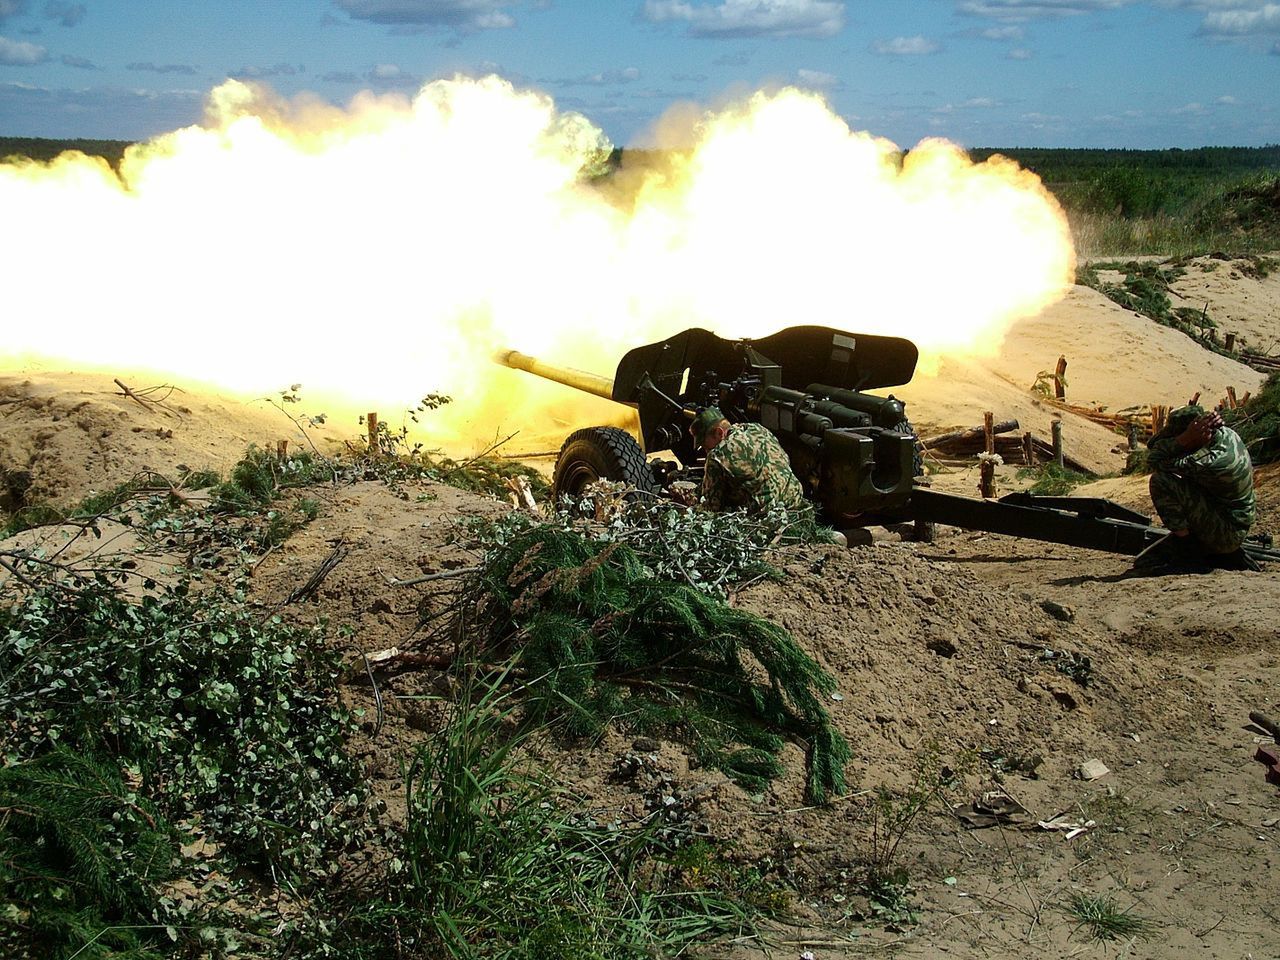 Rosjanie ugasili pożar armatą przeciwpancerną. Ostrzelali szyb naftowy